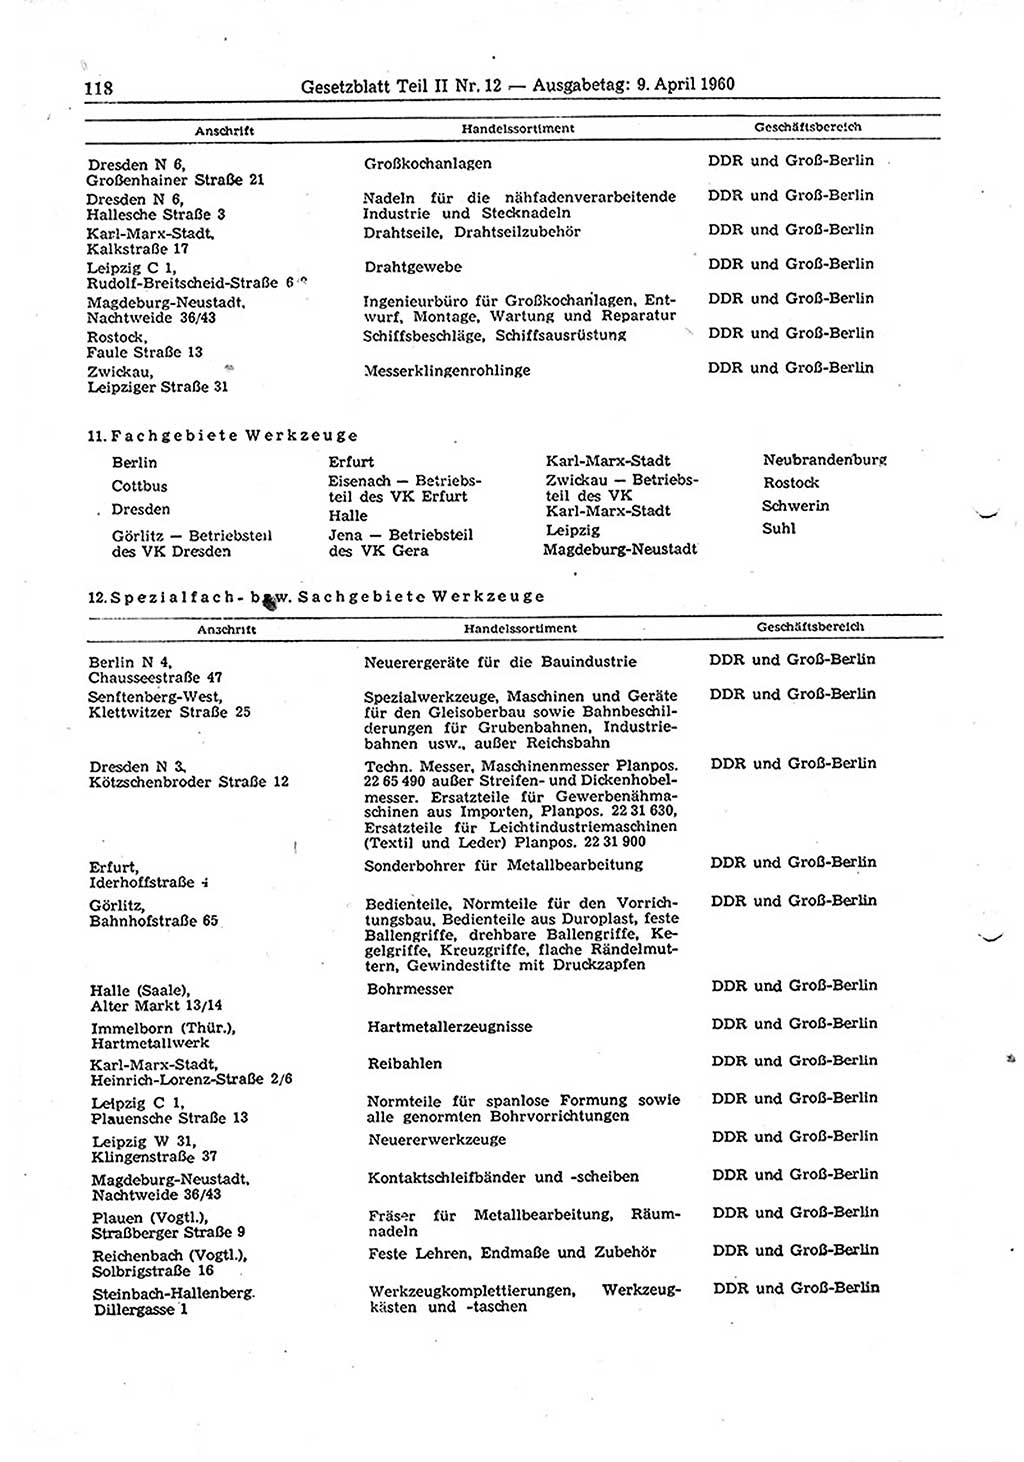 Gesetzblatt (GBl.) der Deutschen Demokratischen Republik (DDR) Teil ⅠⅠ 1960, Seite 118 (GBl. DDR ⅠⅠ 1960, S. 118)